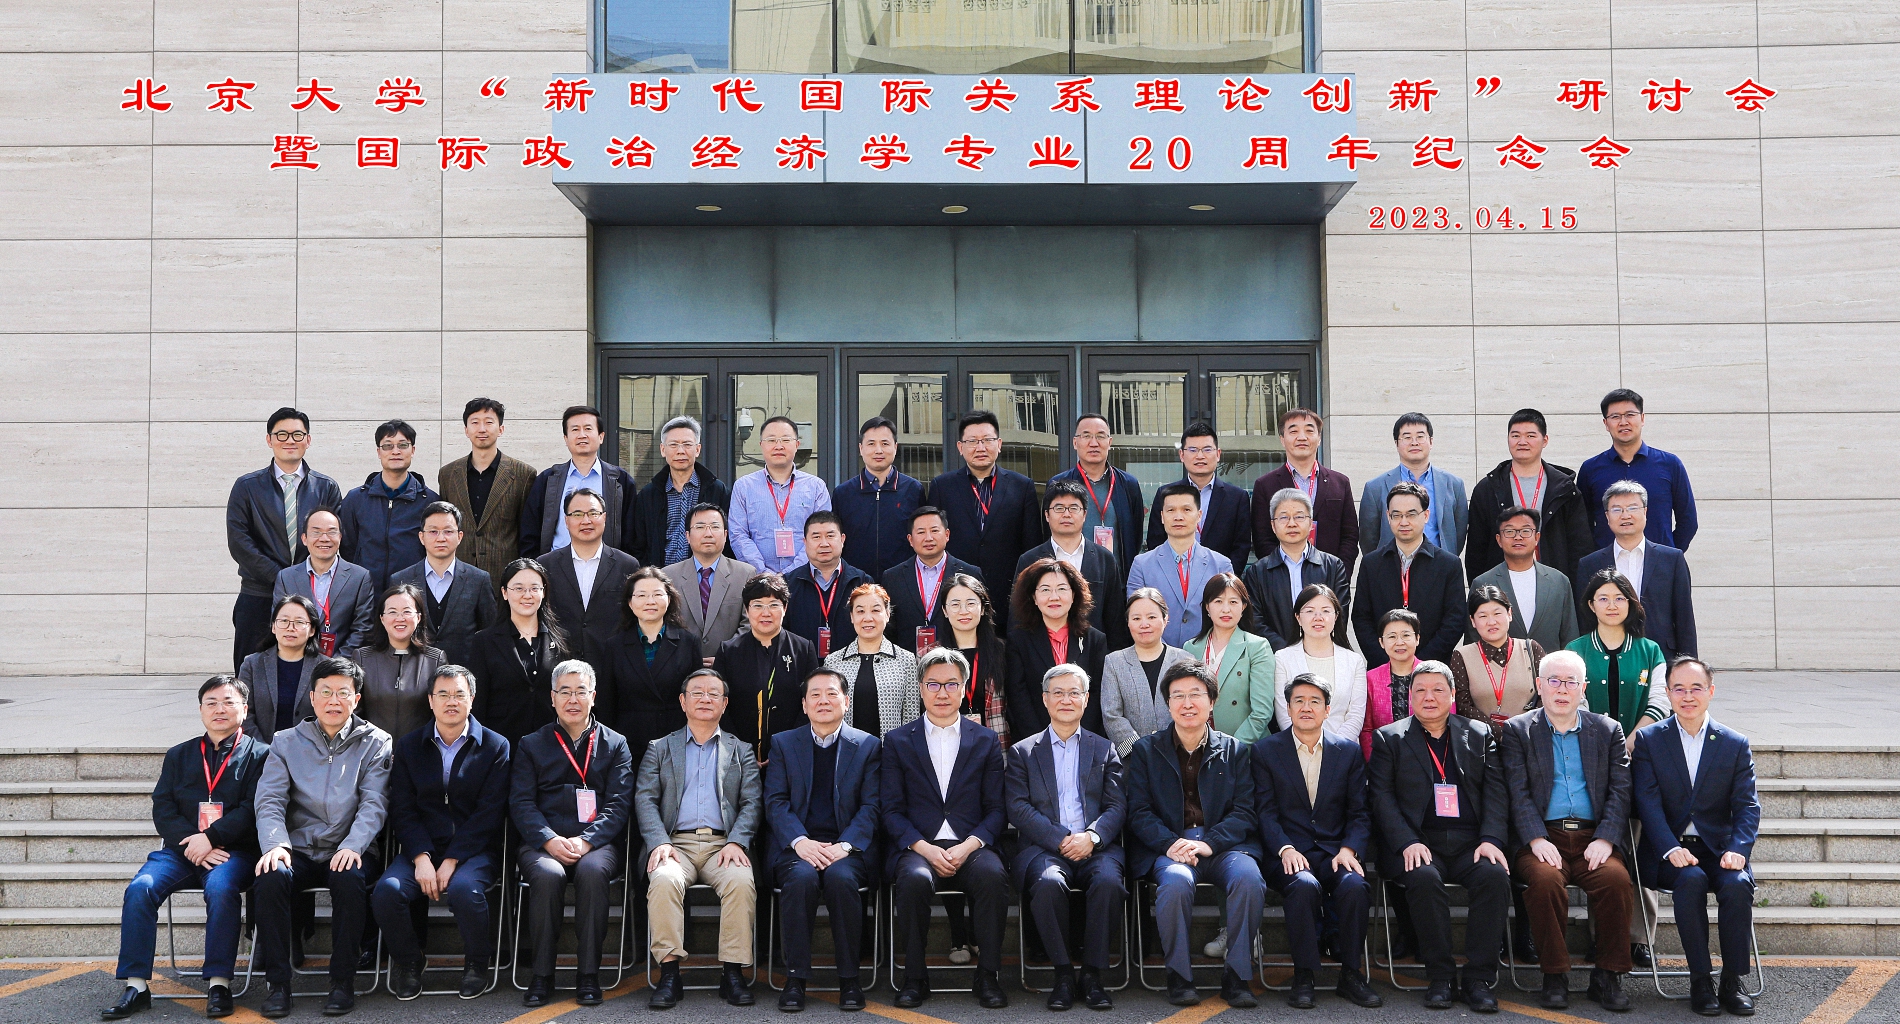 北京大学“新时代国际关系理论创新”研讨会暨国际政治经济学专业20周年纪念会成功举办